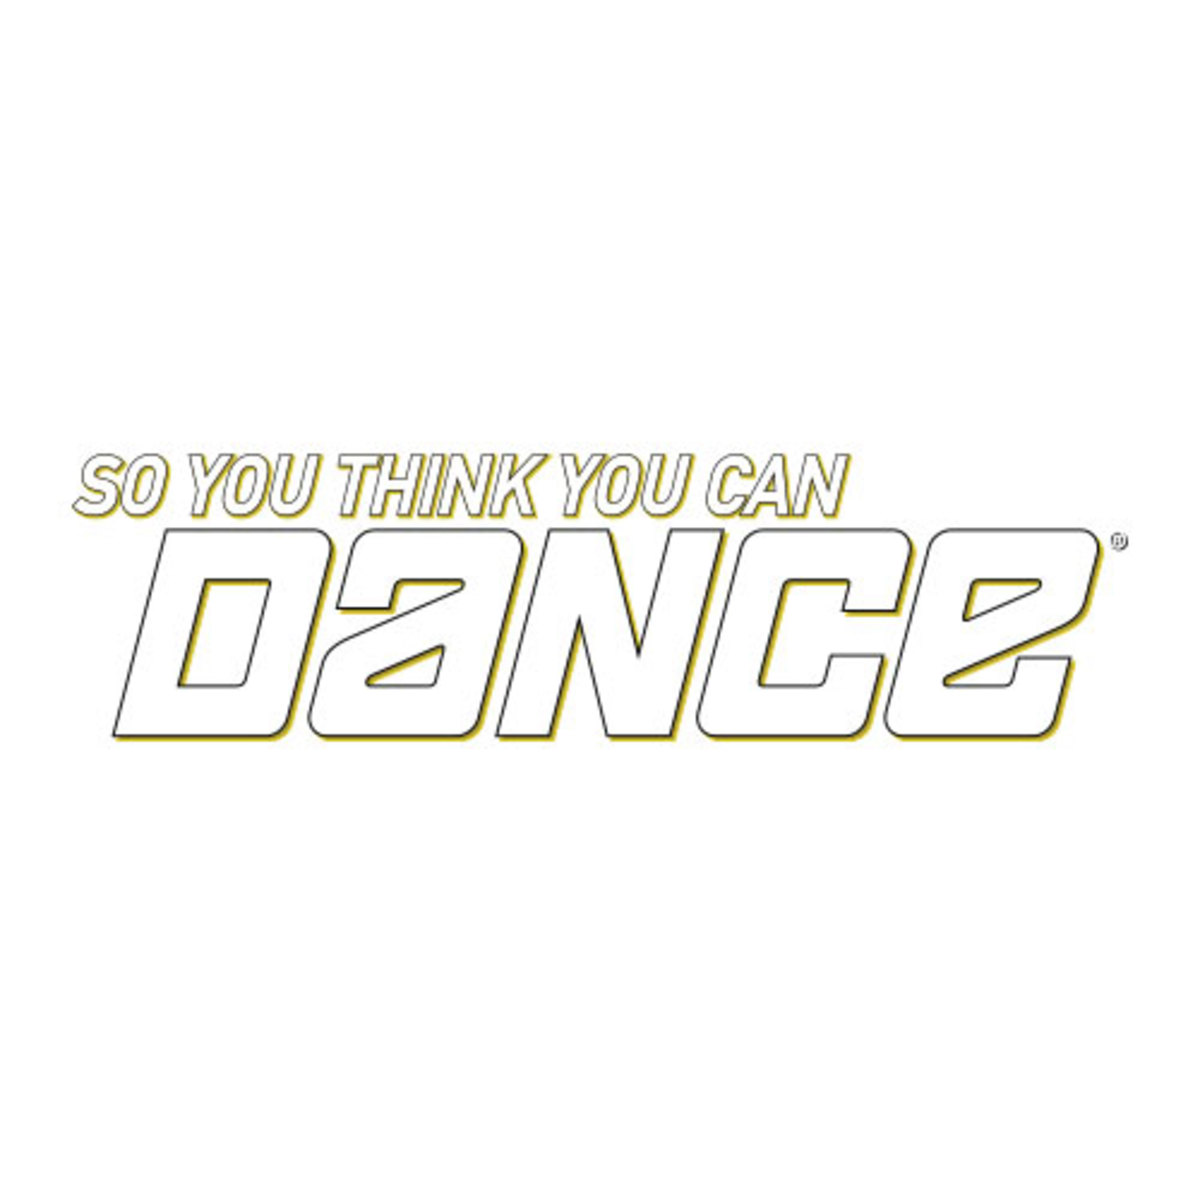 Η επίσημη ανακοίνωση για το «So You Think You Can Dance»